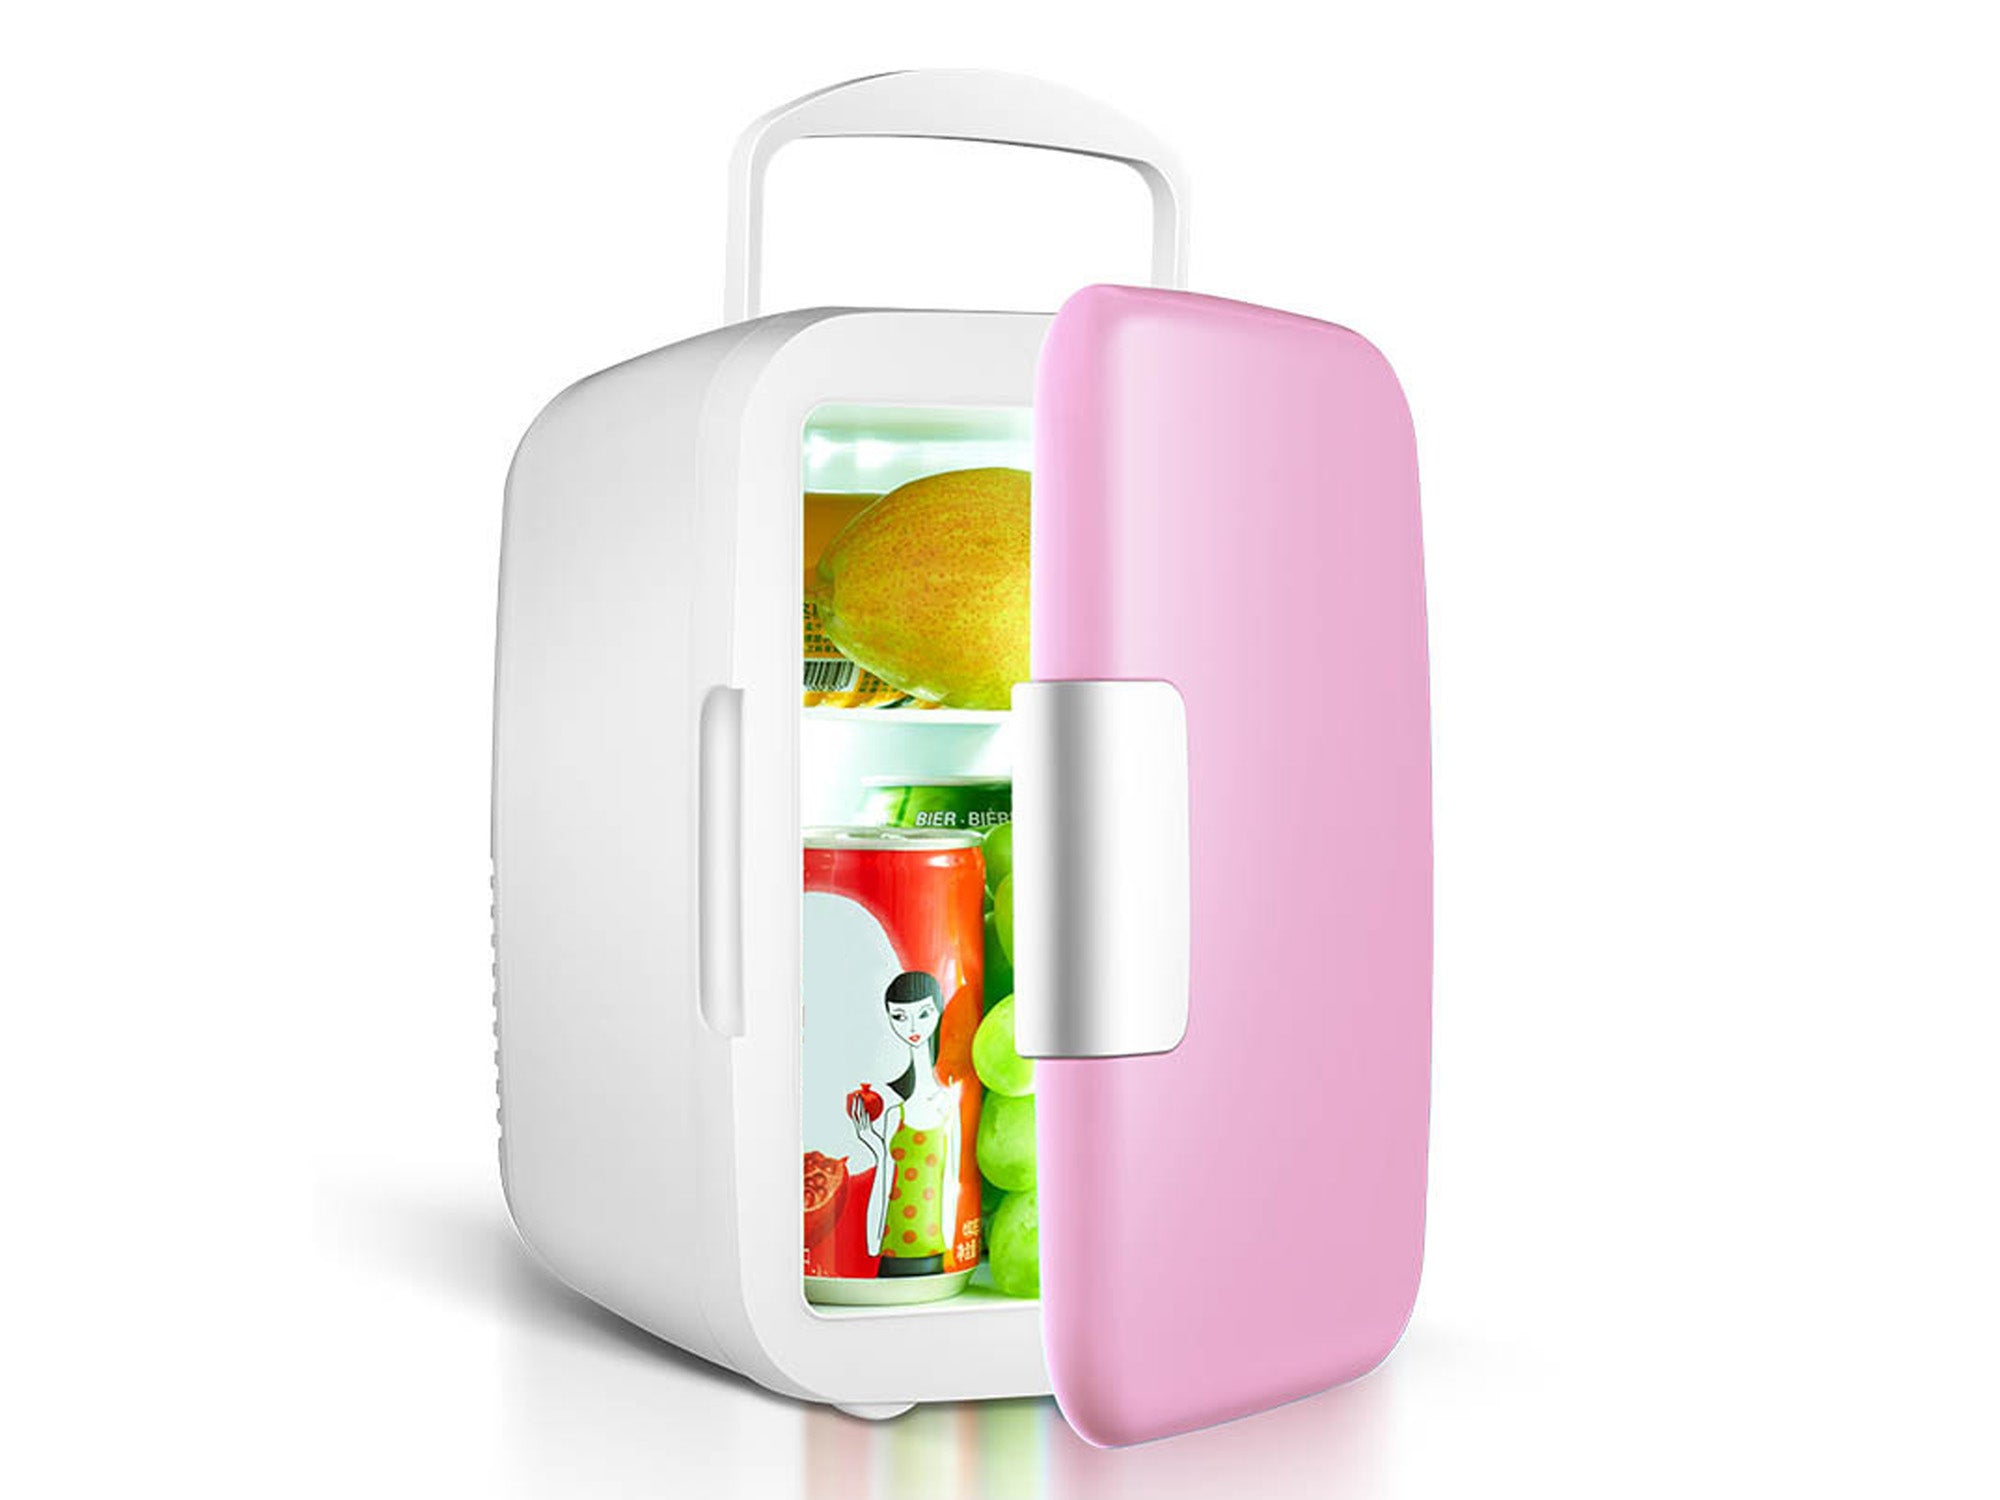 ✔️Große Auswahl - Schrank für Minikühlschrank Lautlos 